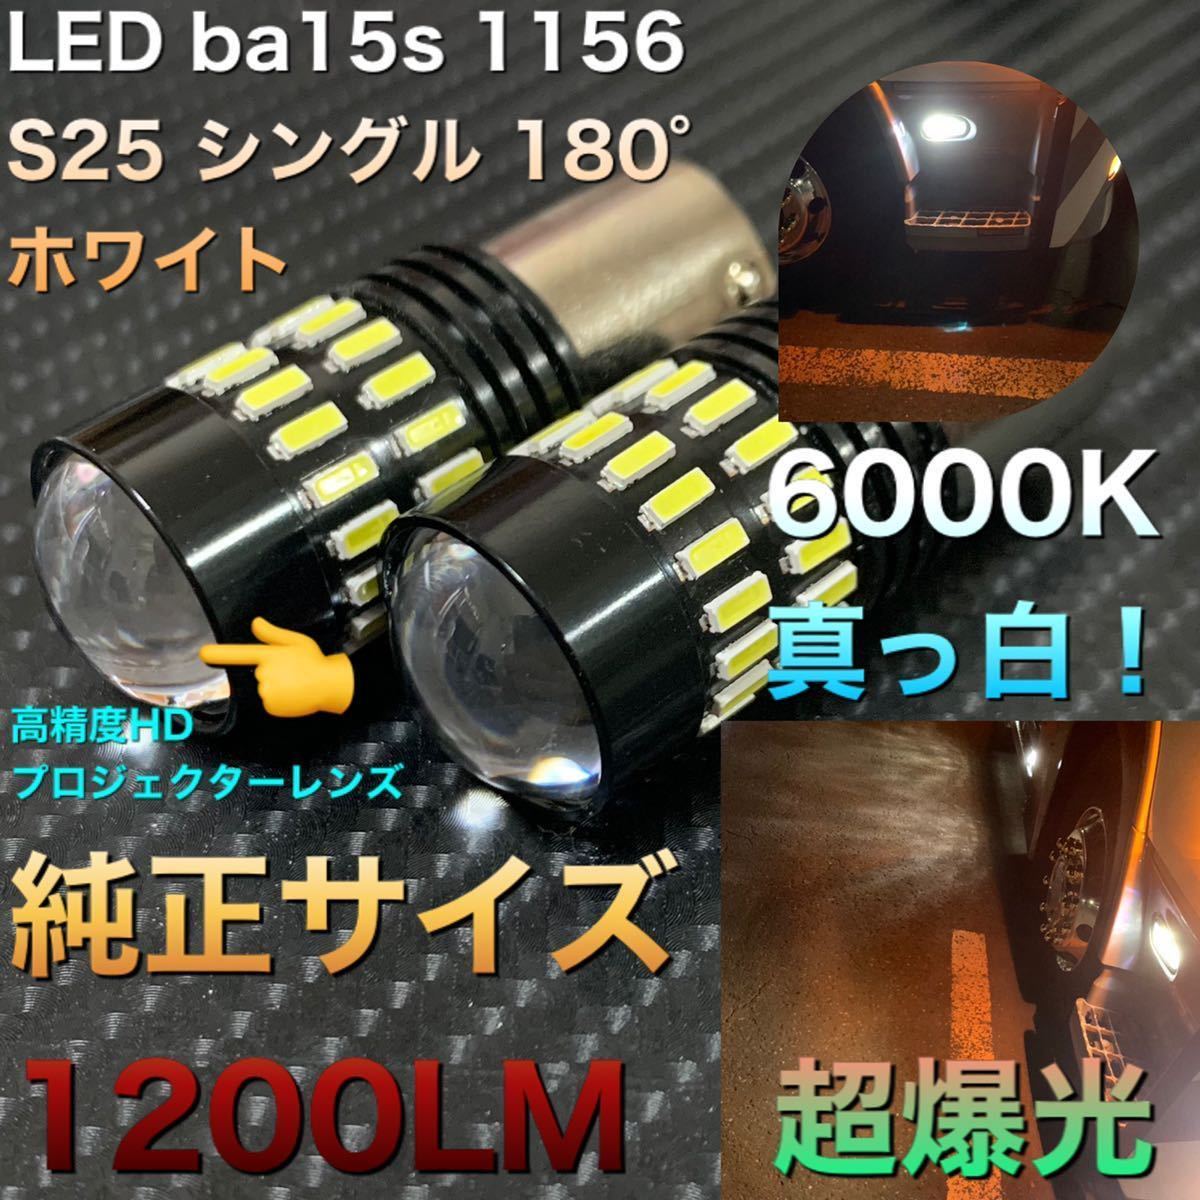 LED 上品な ba15s 1156 S25 シングル ホワイトLED バックランプ LEDバルブ 日本 ナンバー灯 24V 兼用 リバース 2021年 高輝度 モデル 12V 爆光